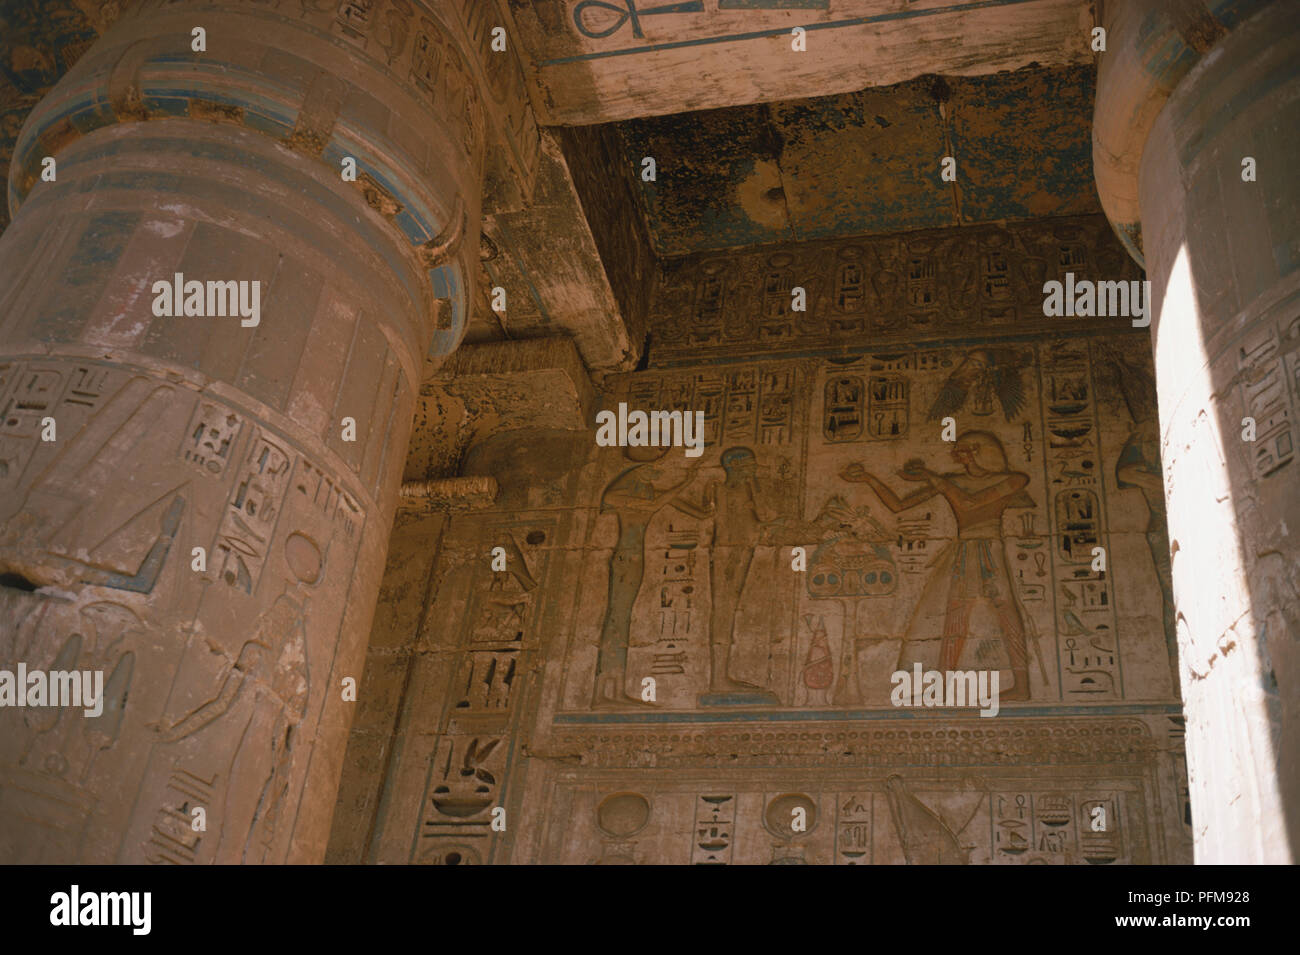 Egitto, spalliere pareti dipinte e scolpite le colonne all'interno del tempio di Ramesse III a Medinet Habu nell'antica capitale egiziana di Tebe. Foto Stock